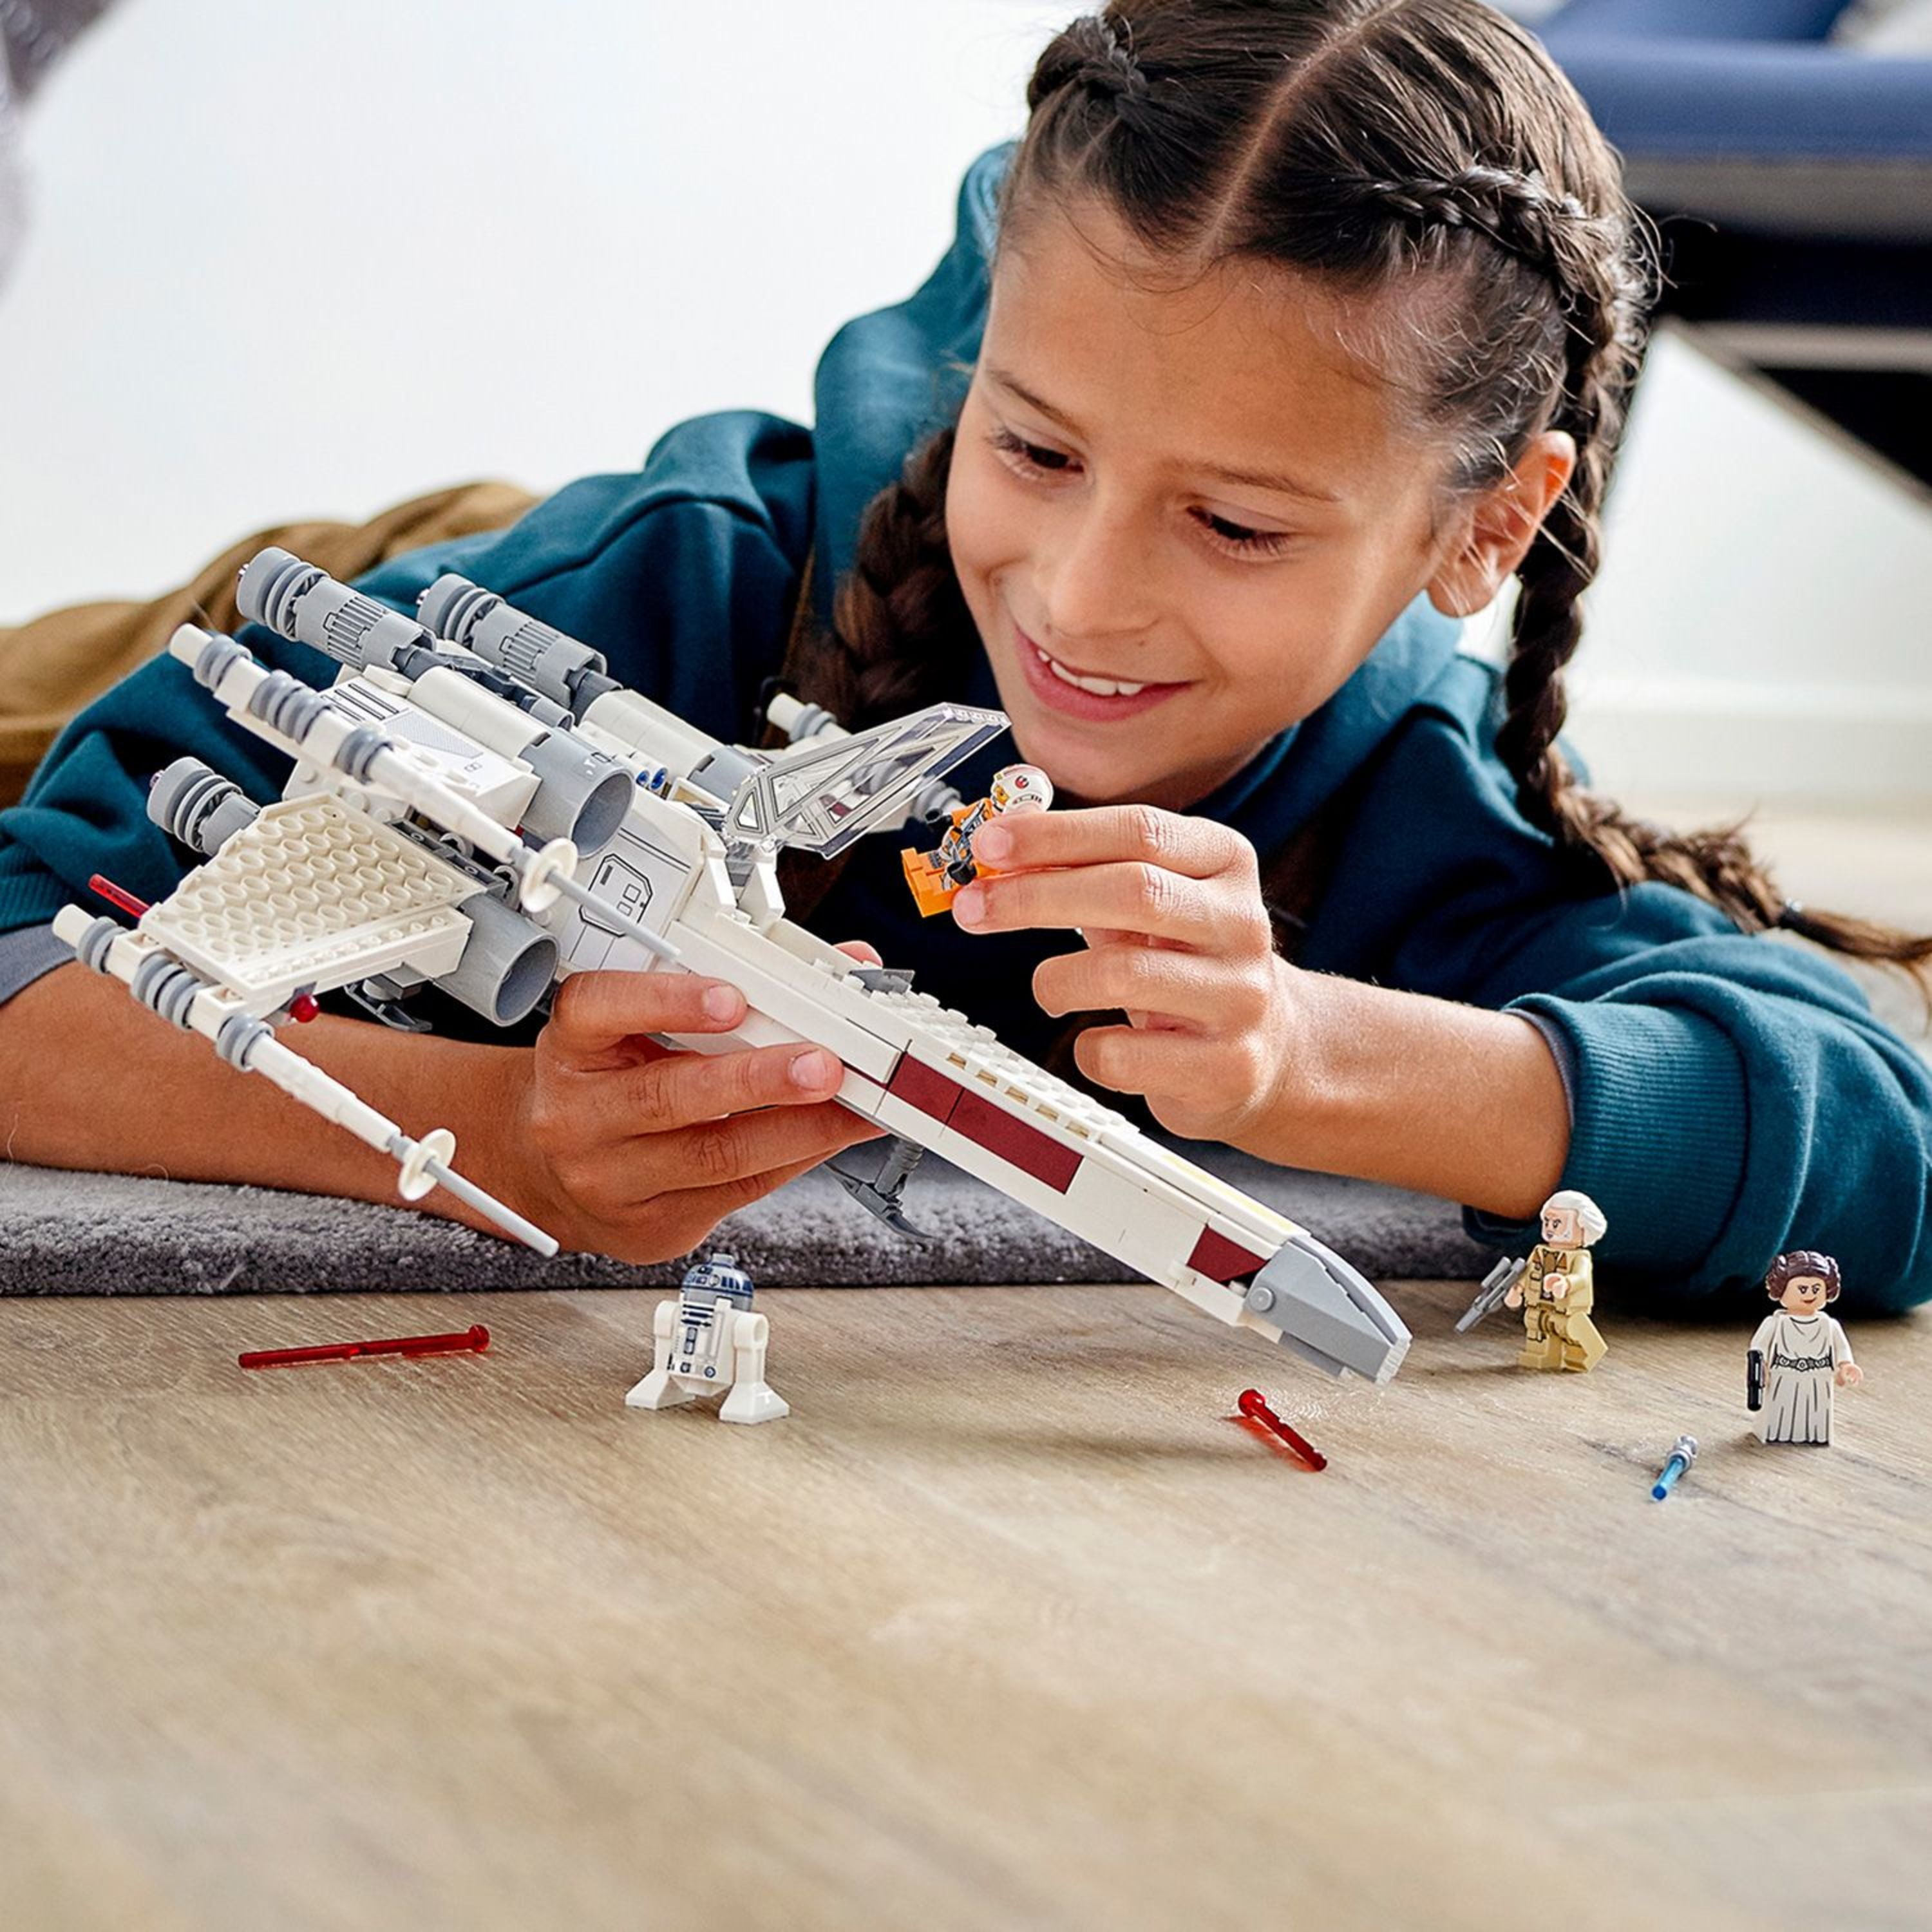  LEGO Star Wars Luke Skywalker's X-Wing Fighter 75301